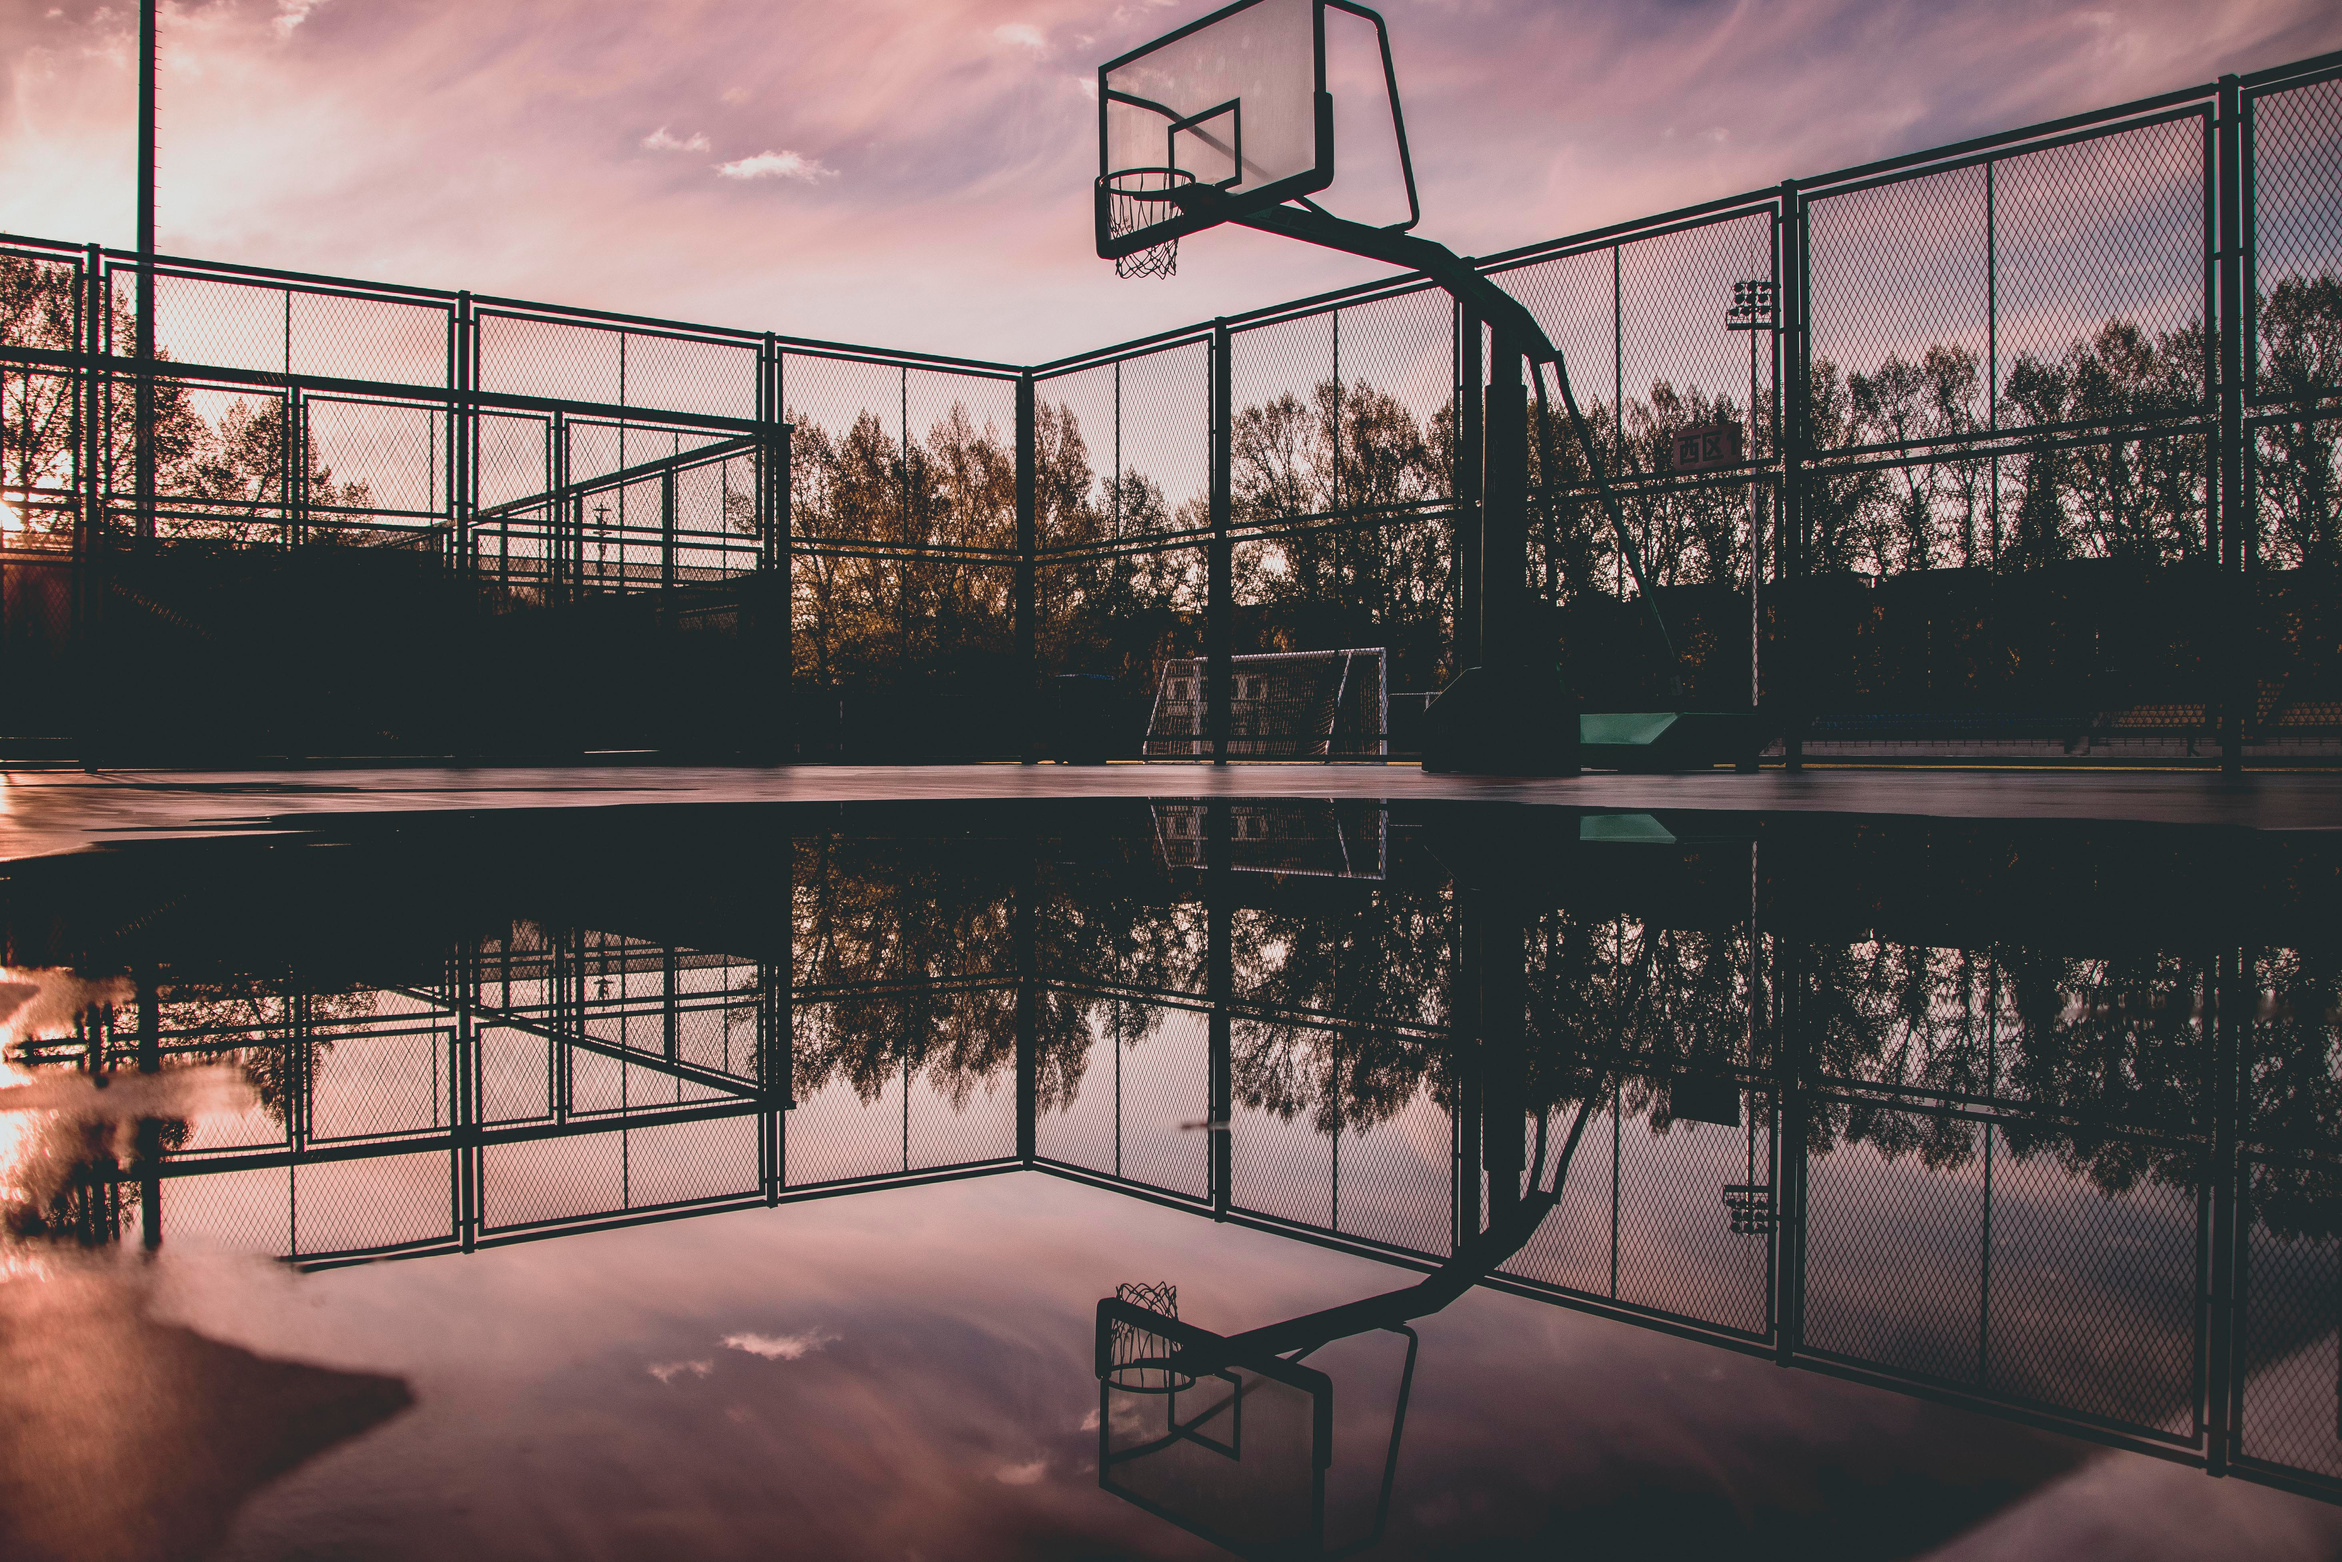 Basketball Hoop Reflecting on Water